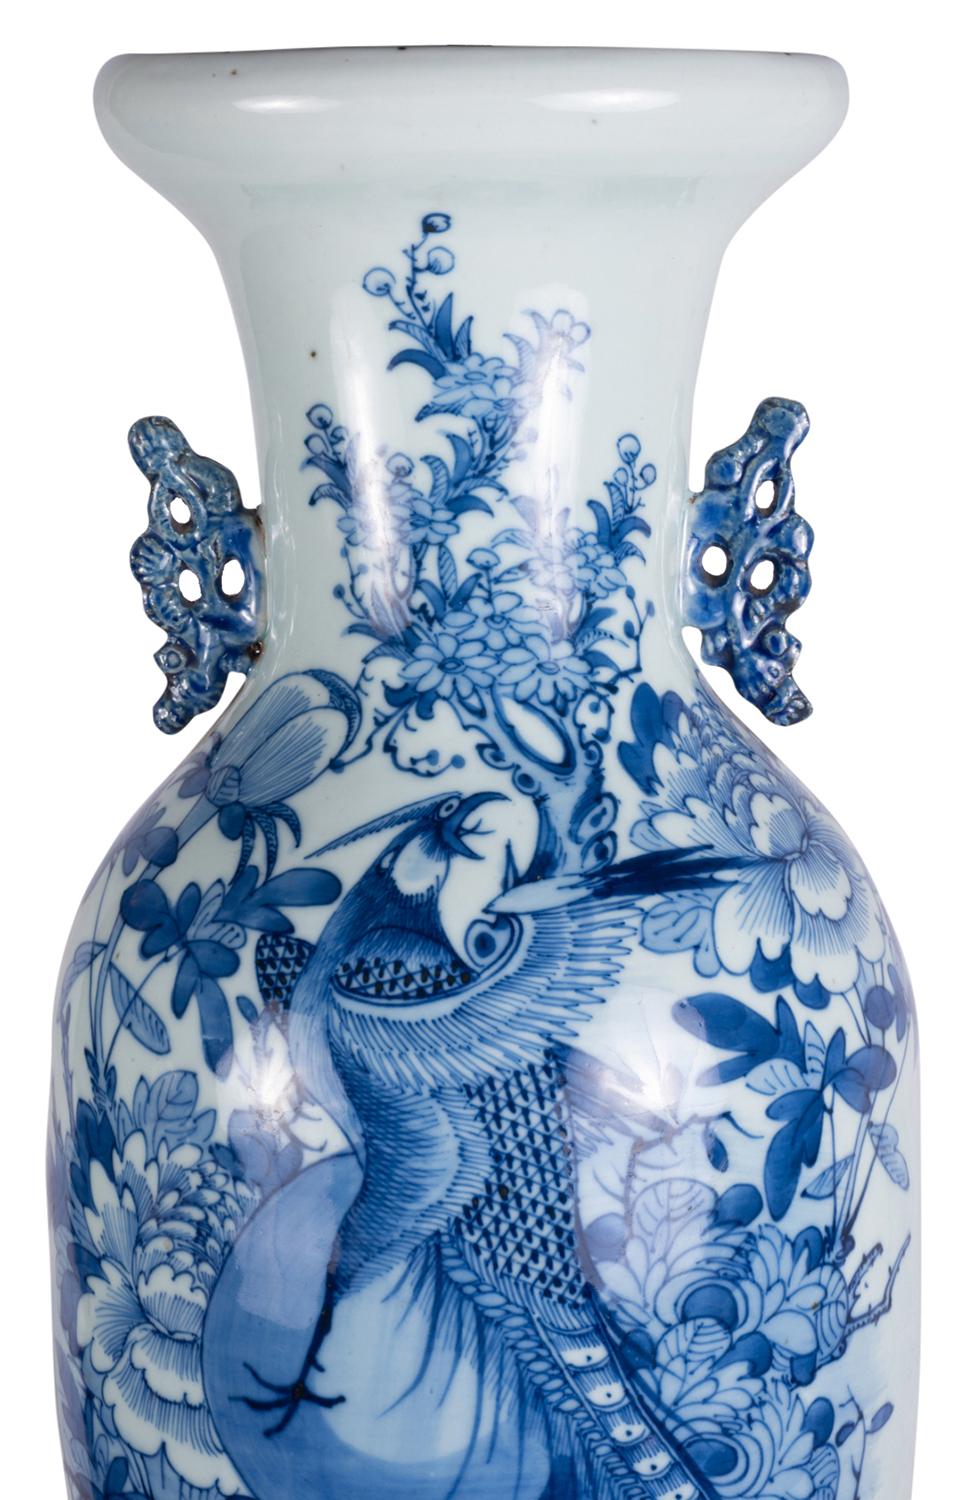 Un vase ou une lampe très décoratif du 19ème siècle en bleu et blanc, avec un fond blanc avec des scènes peintes à la main en bleu d'oiseaux exotiques, de fleurs et de feuillage, des poignées en porcelaine percées de chaque côté et une base en bois.